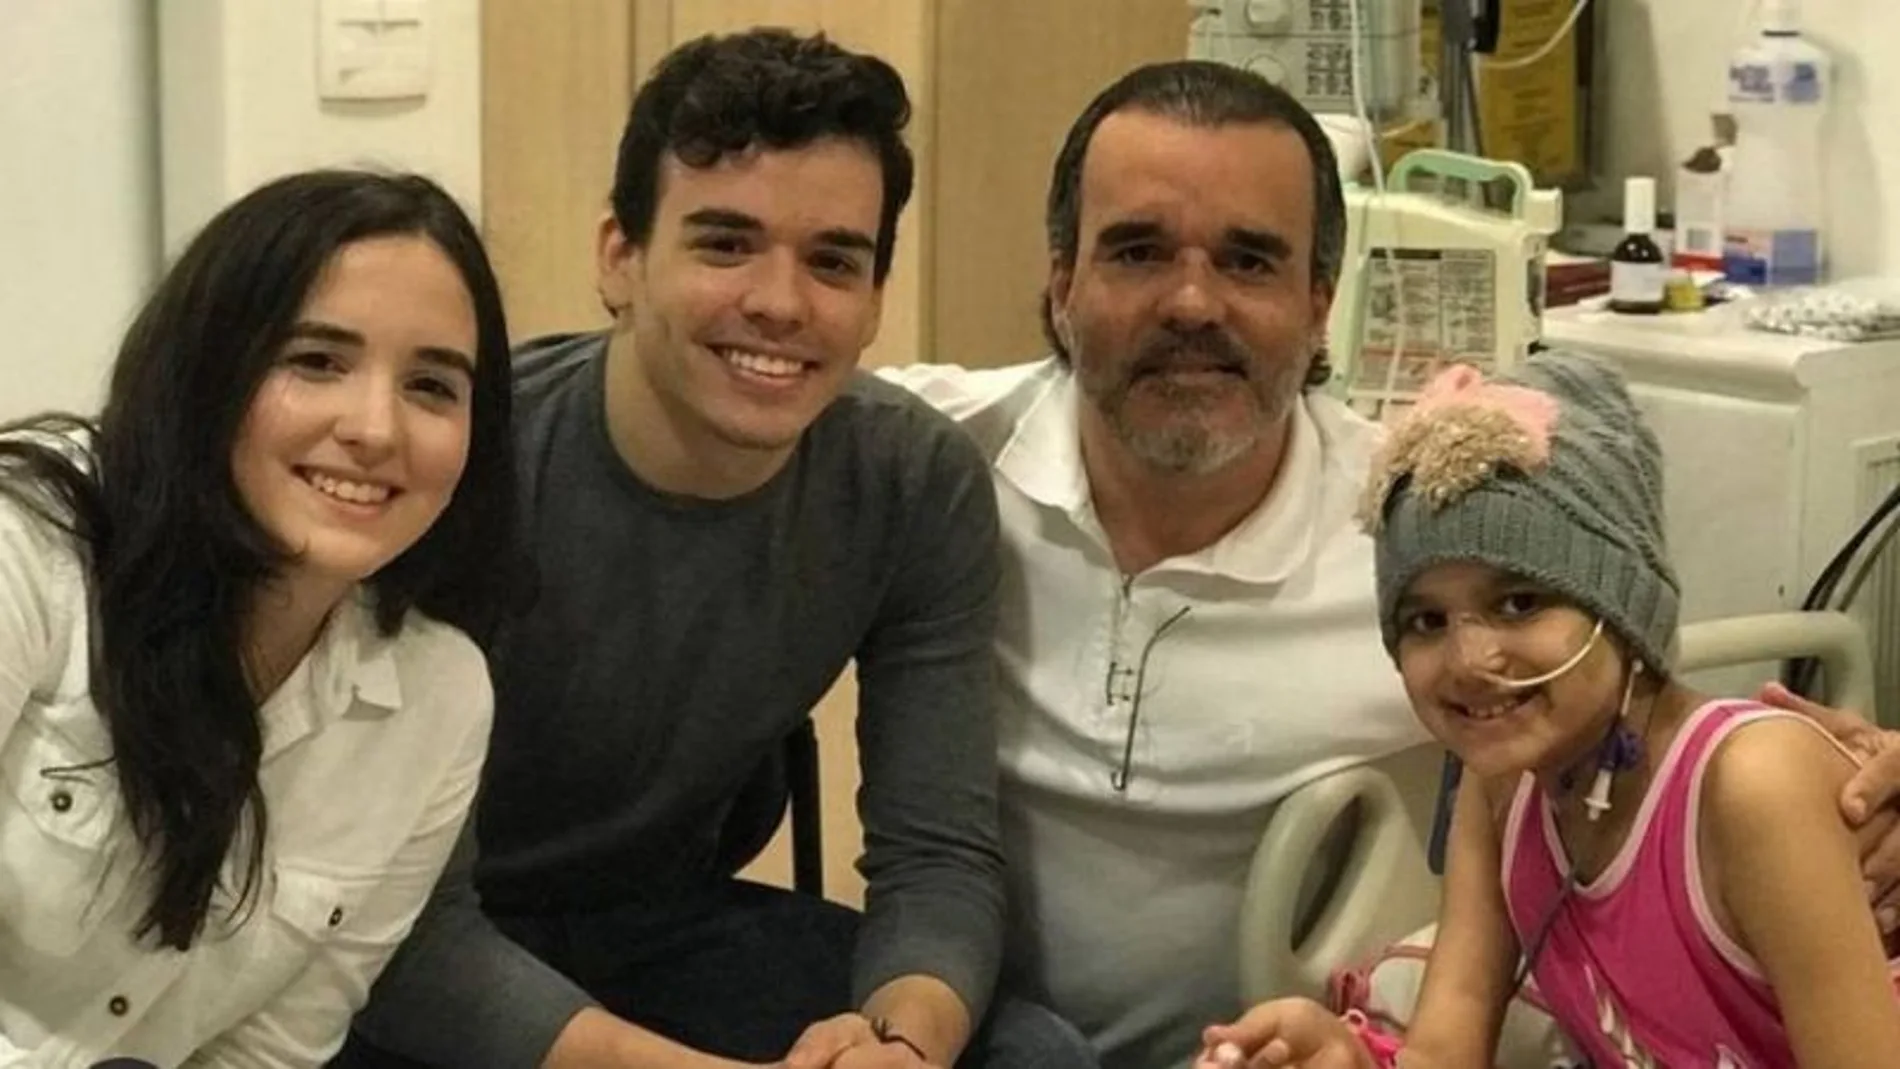 Régis Feitosa Mota junto a sus tres hijos ya fallecidos por cáncer